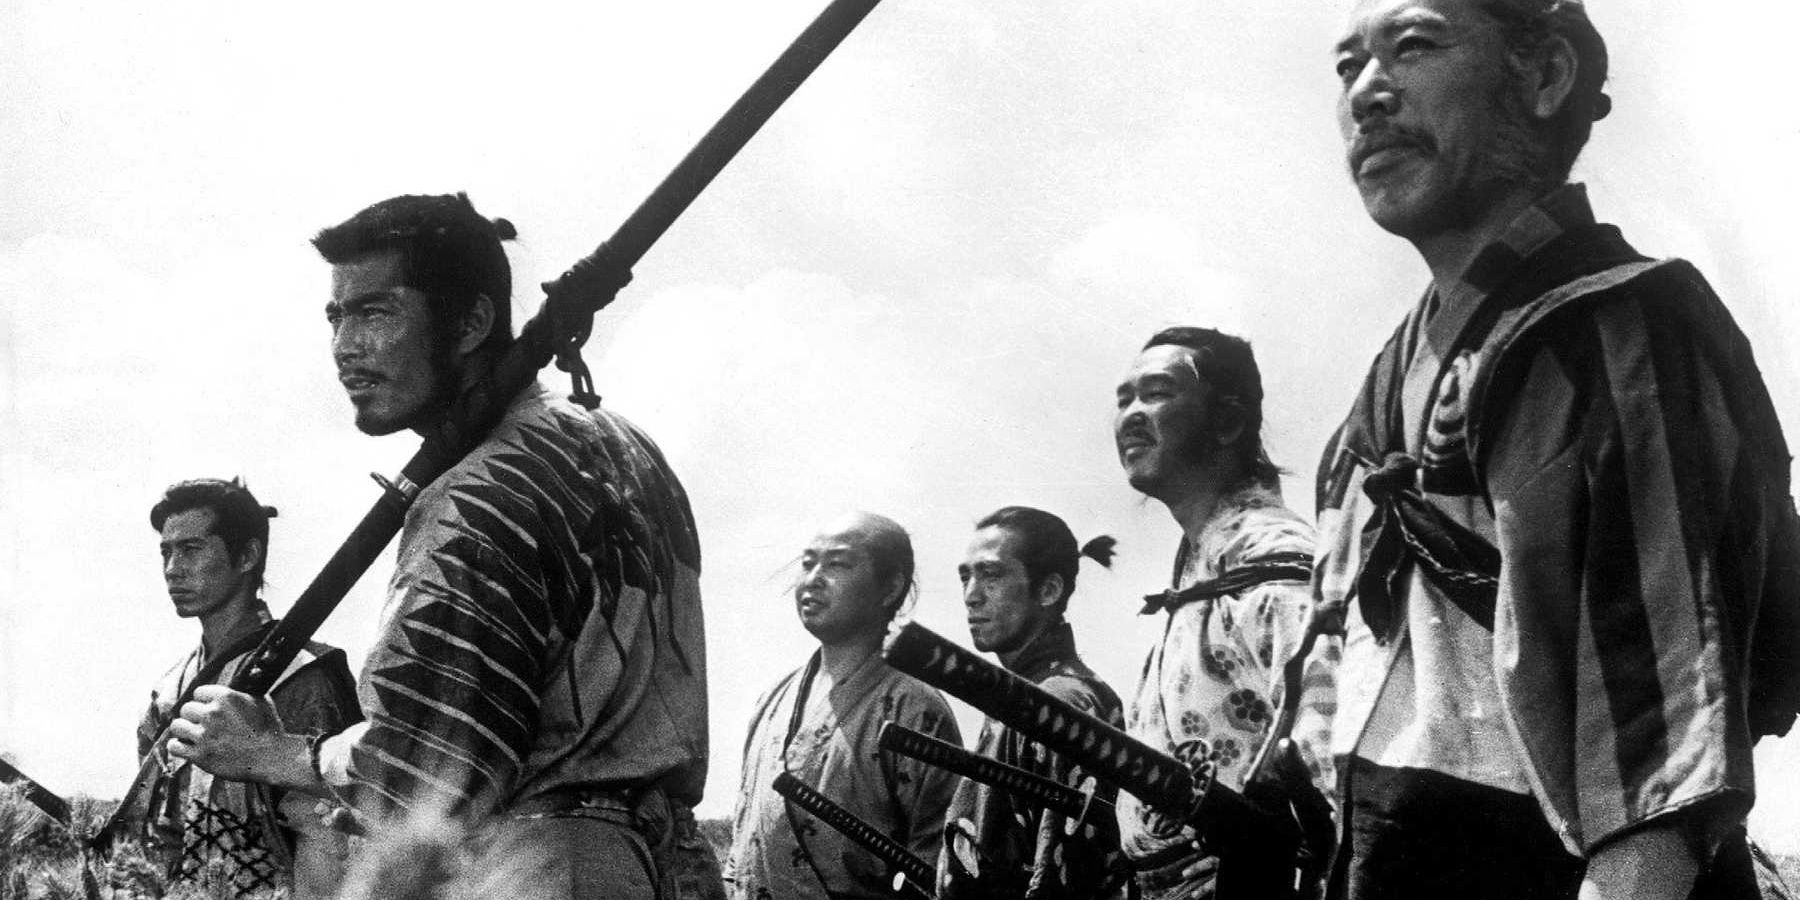 The cast of Seven Samurai